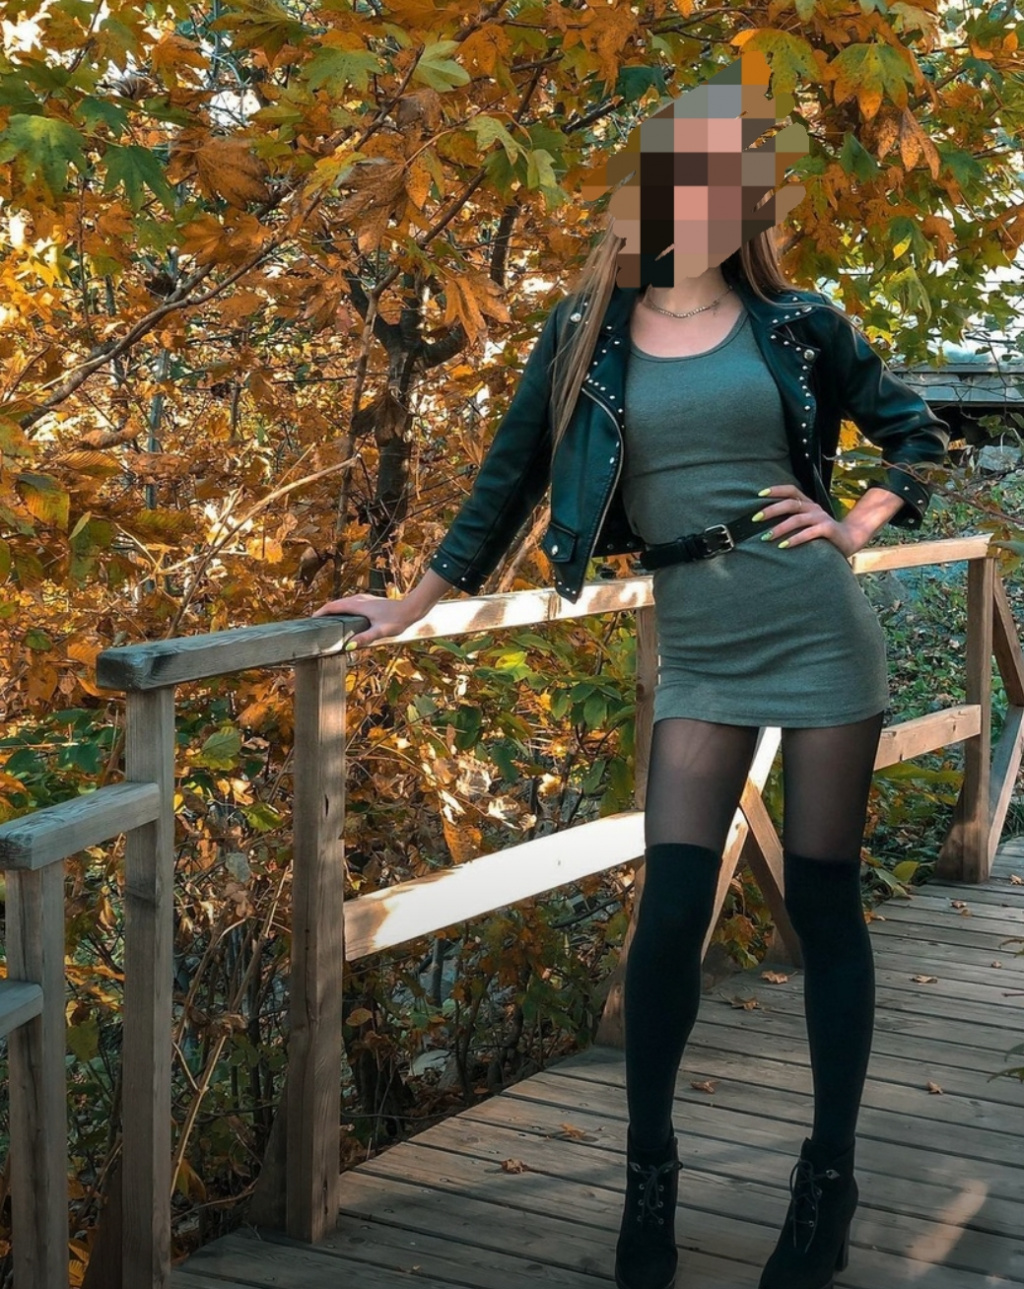 Геля Анал: Проститутка-индивидуалка в Воронеже